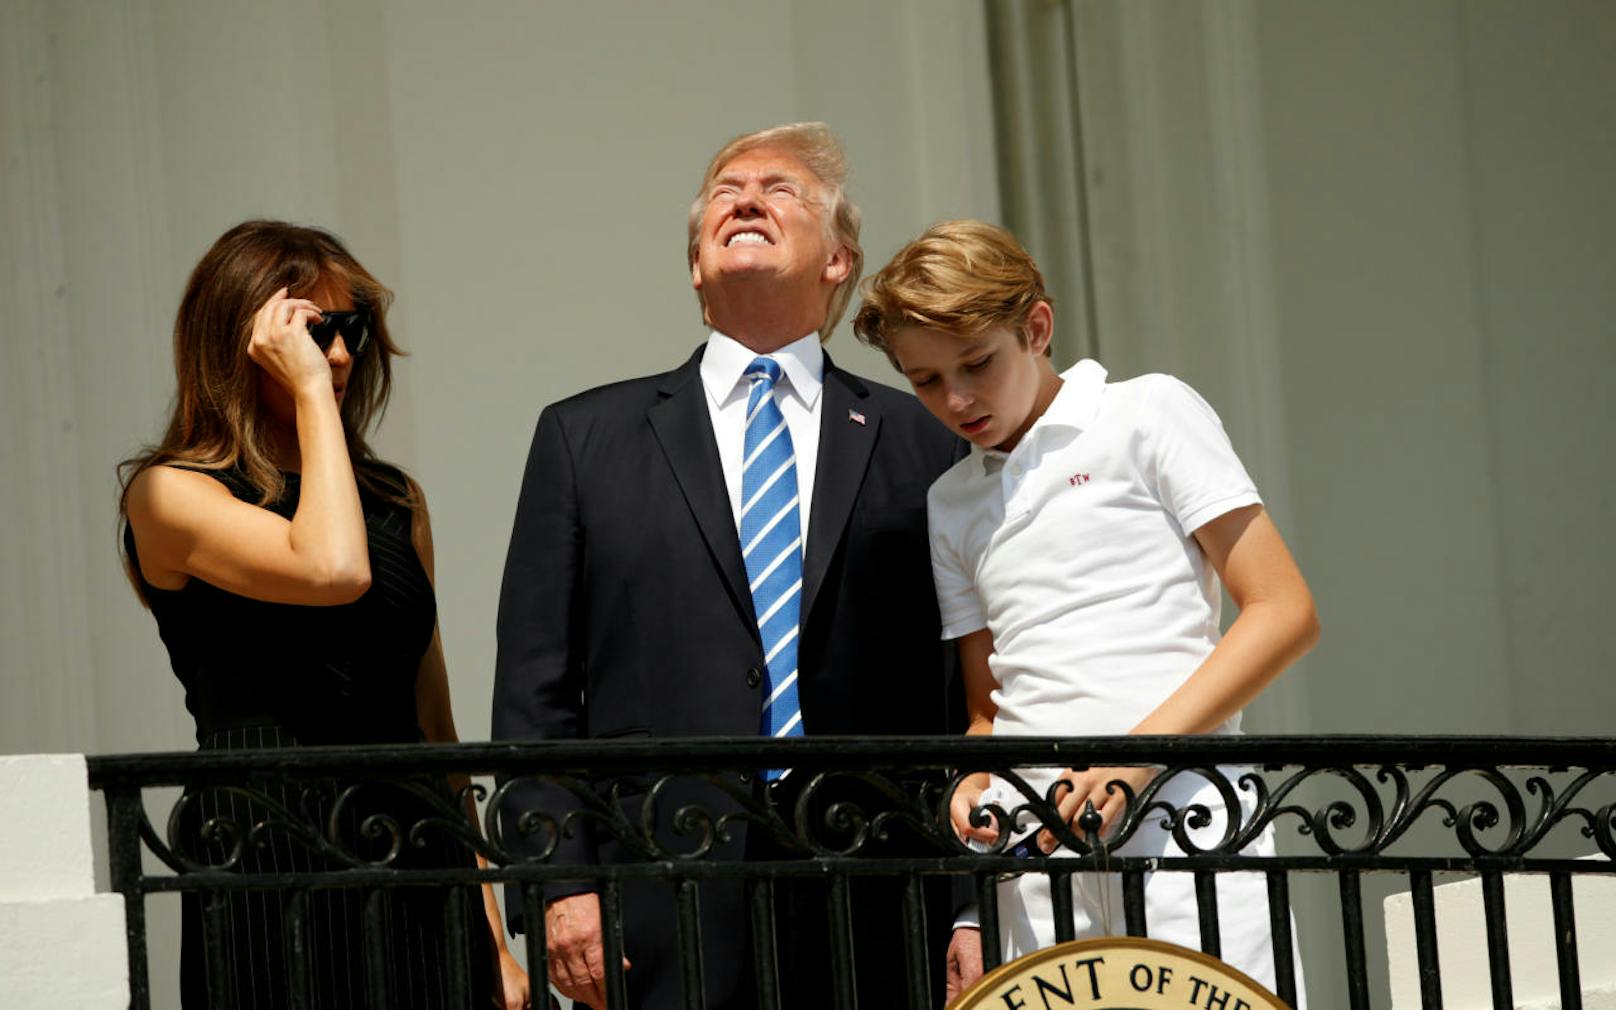 Familie Trump beobachtet die Sonnenfinsternis vom Balkon des Weißen Hauses aus.